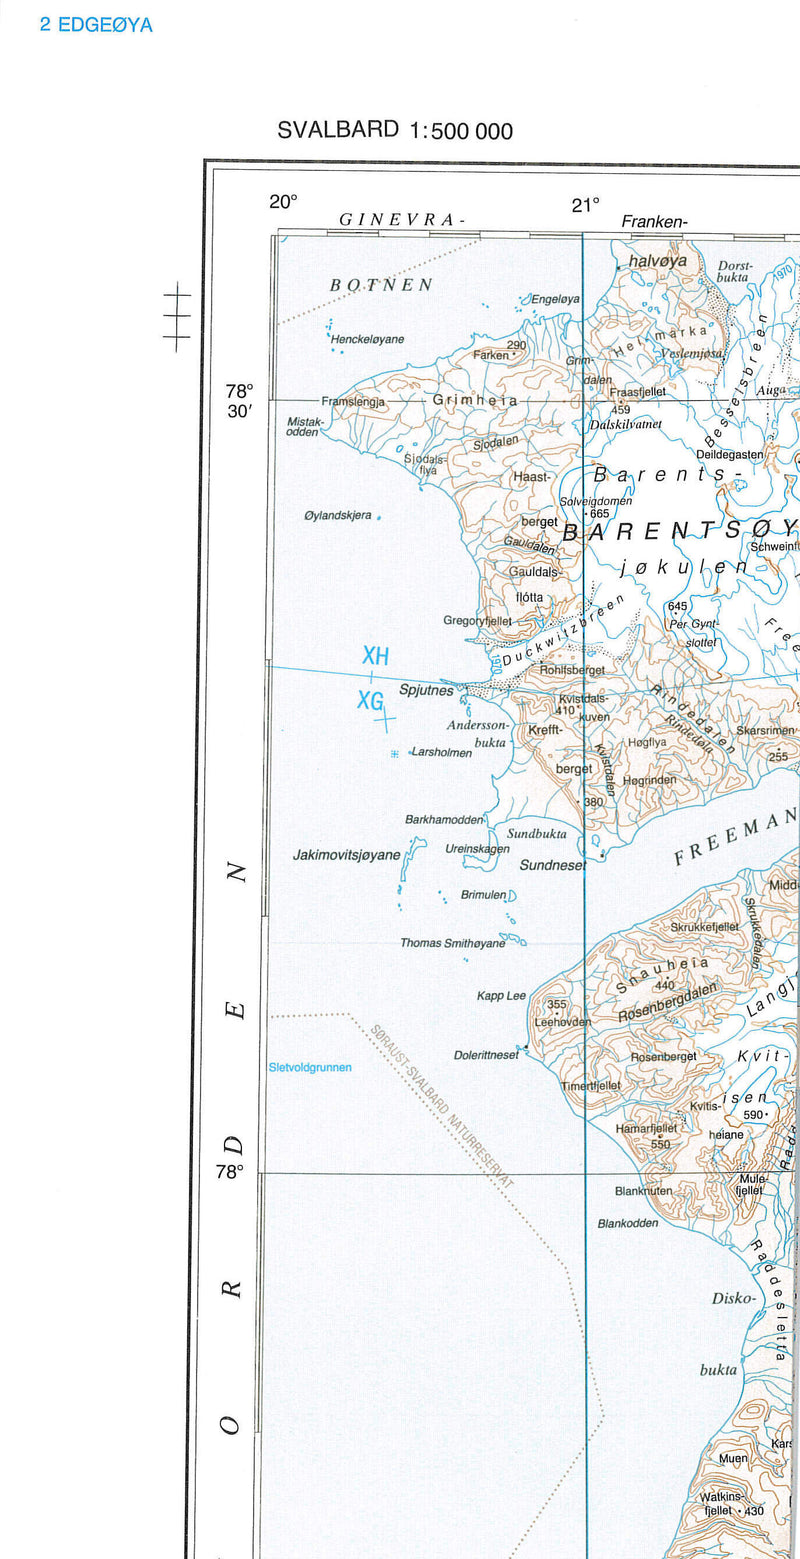 Kart Svalbard Edgeøya 1:500,000 (Sheet 2)